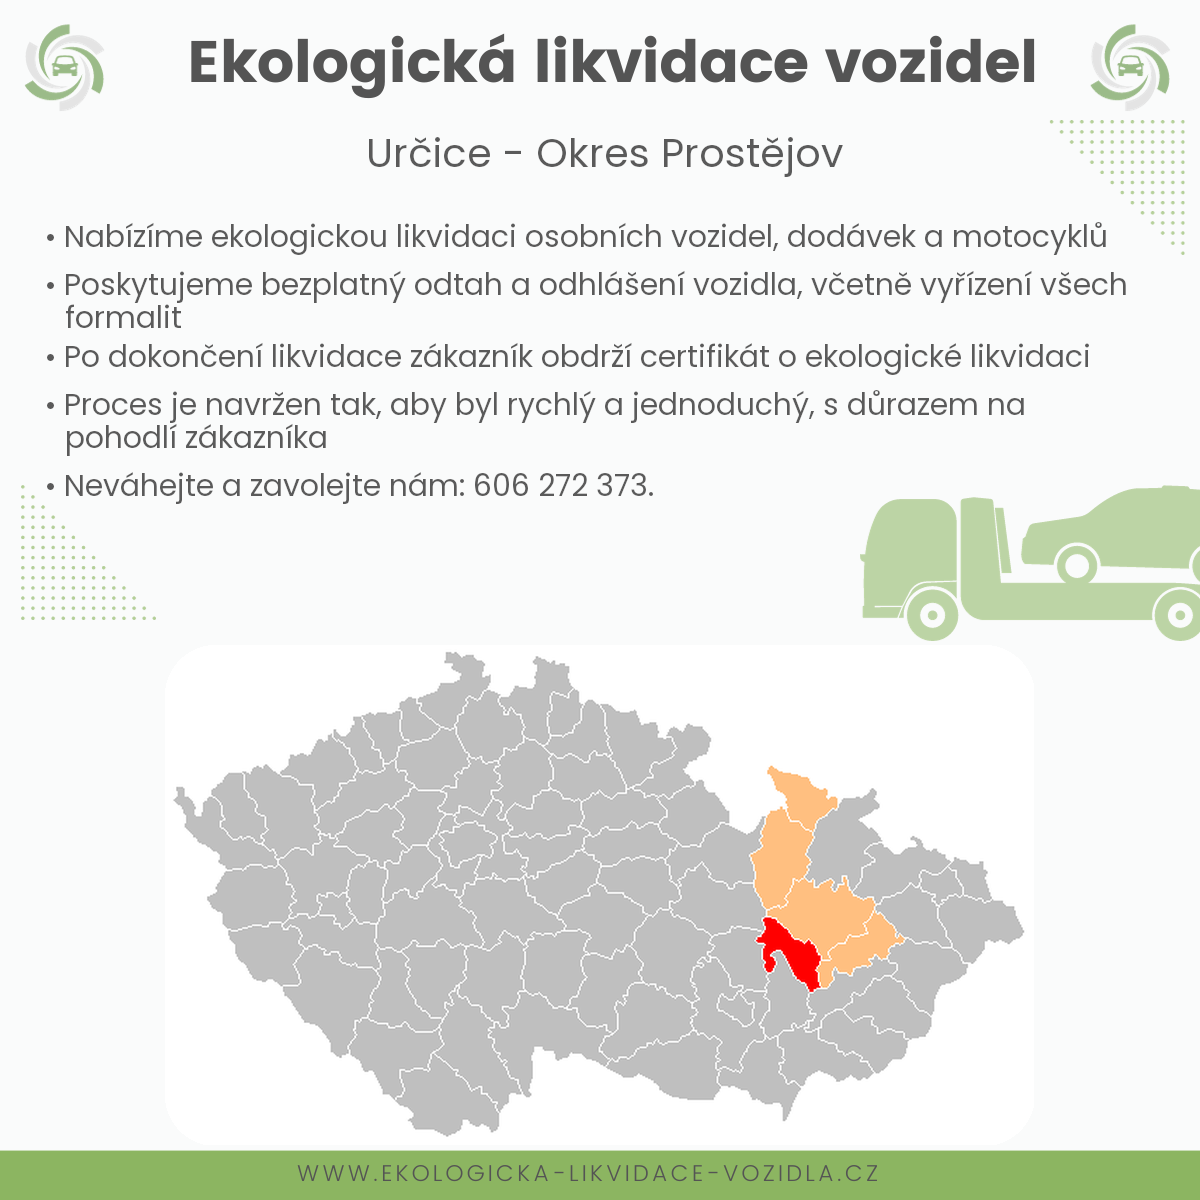 likvidace vozidel - Určice